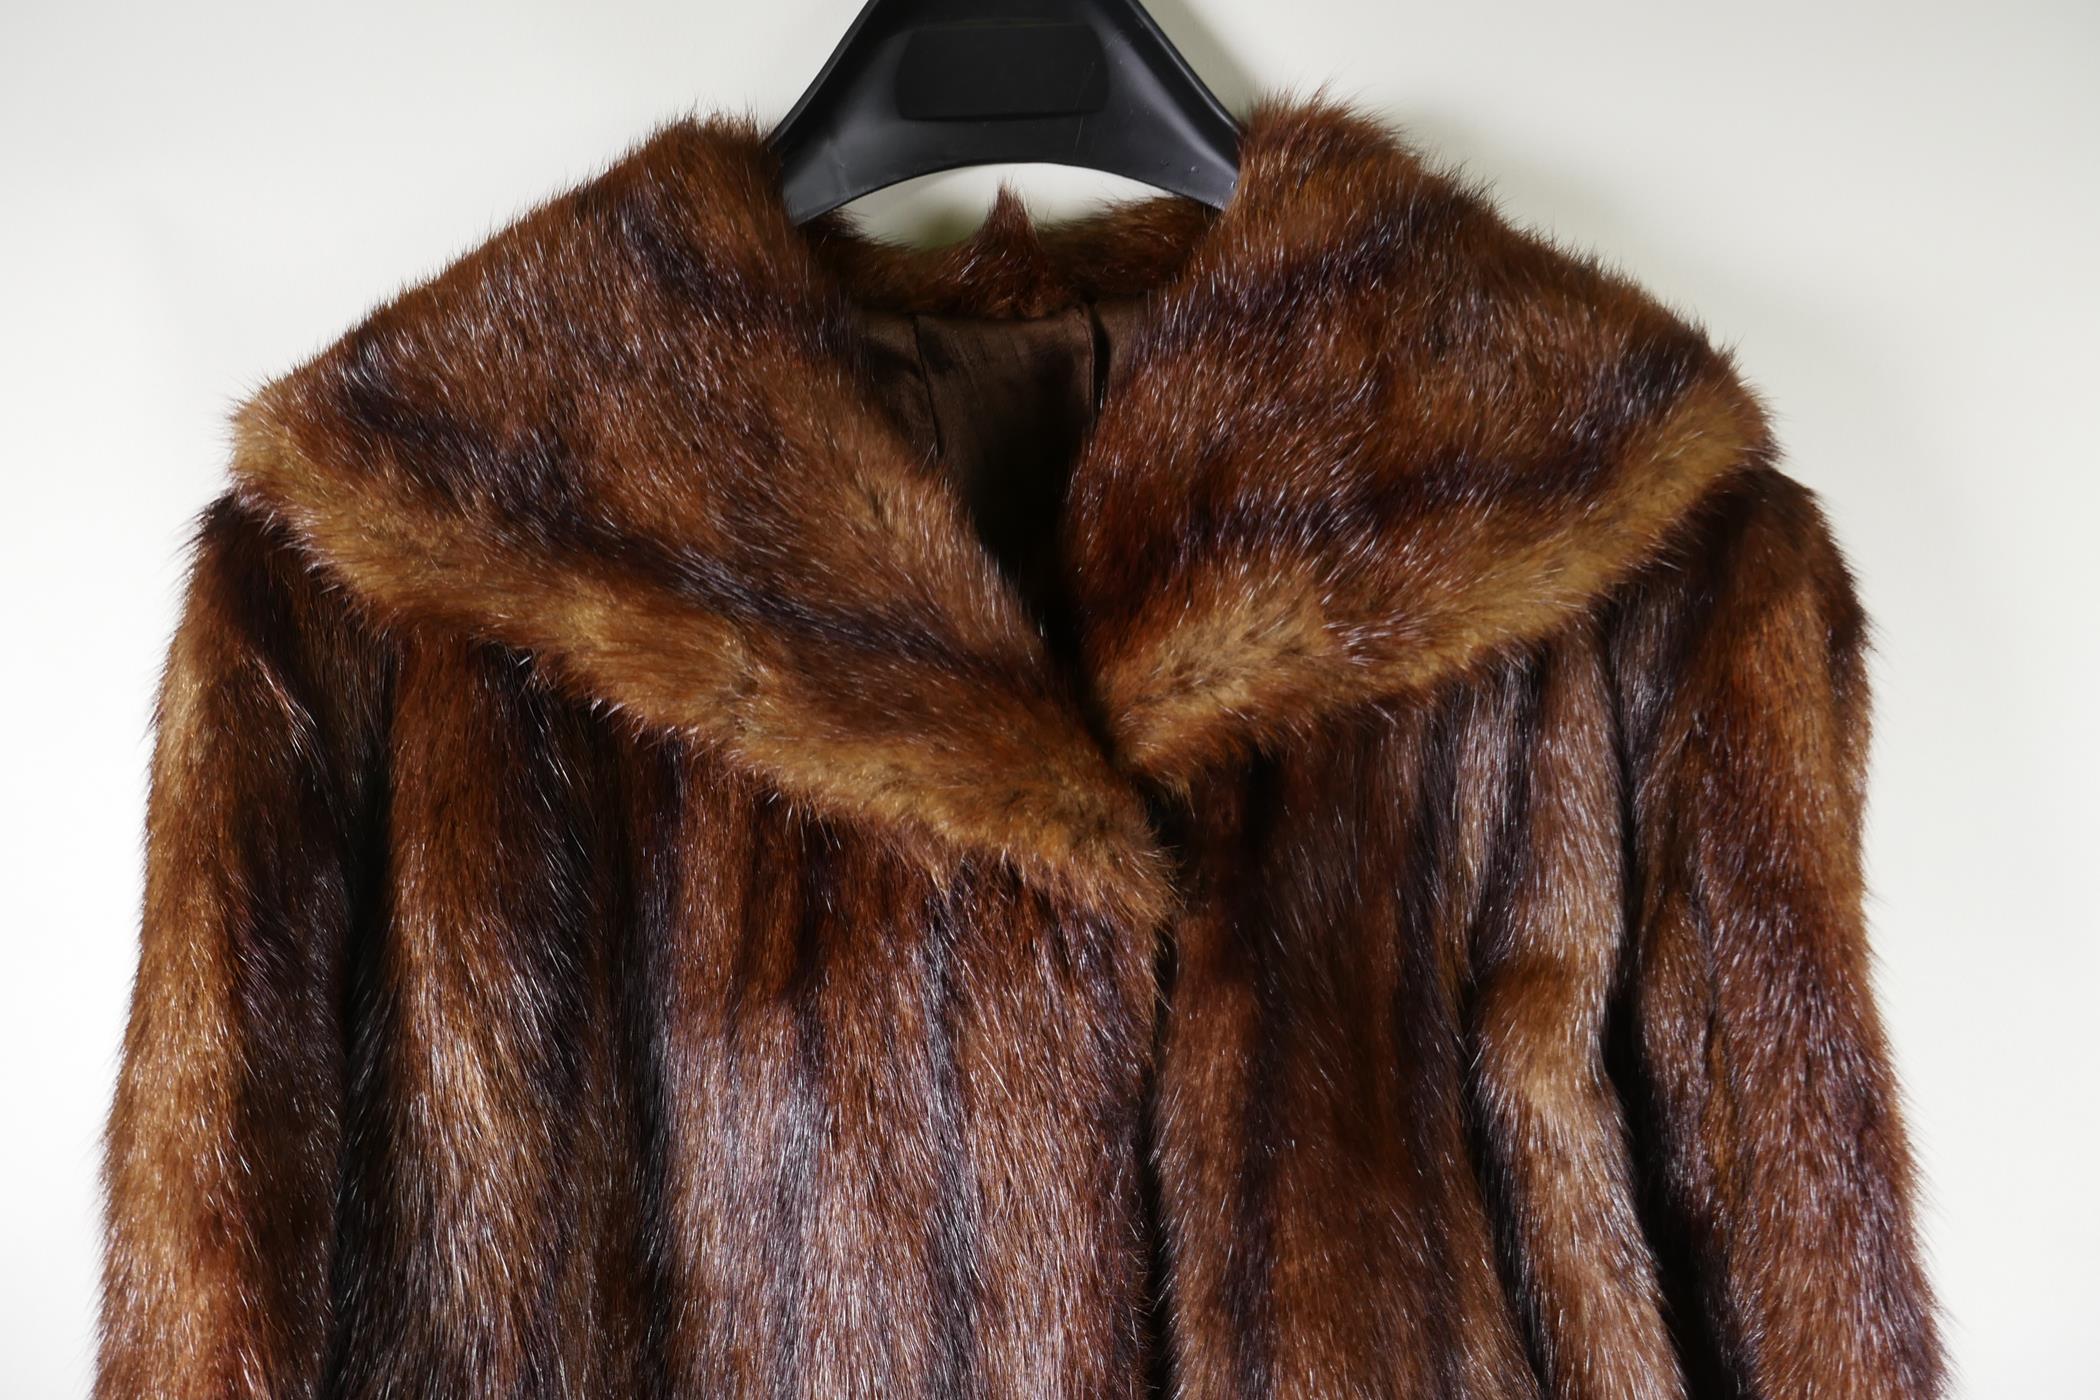 A vintage full length fur coat - Image 2 of 2